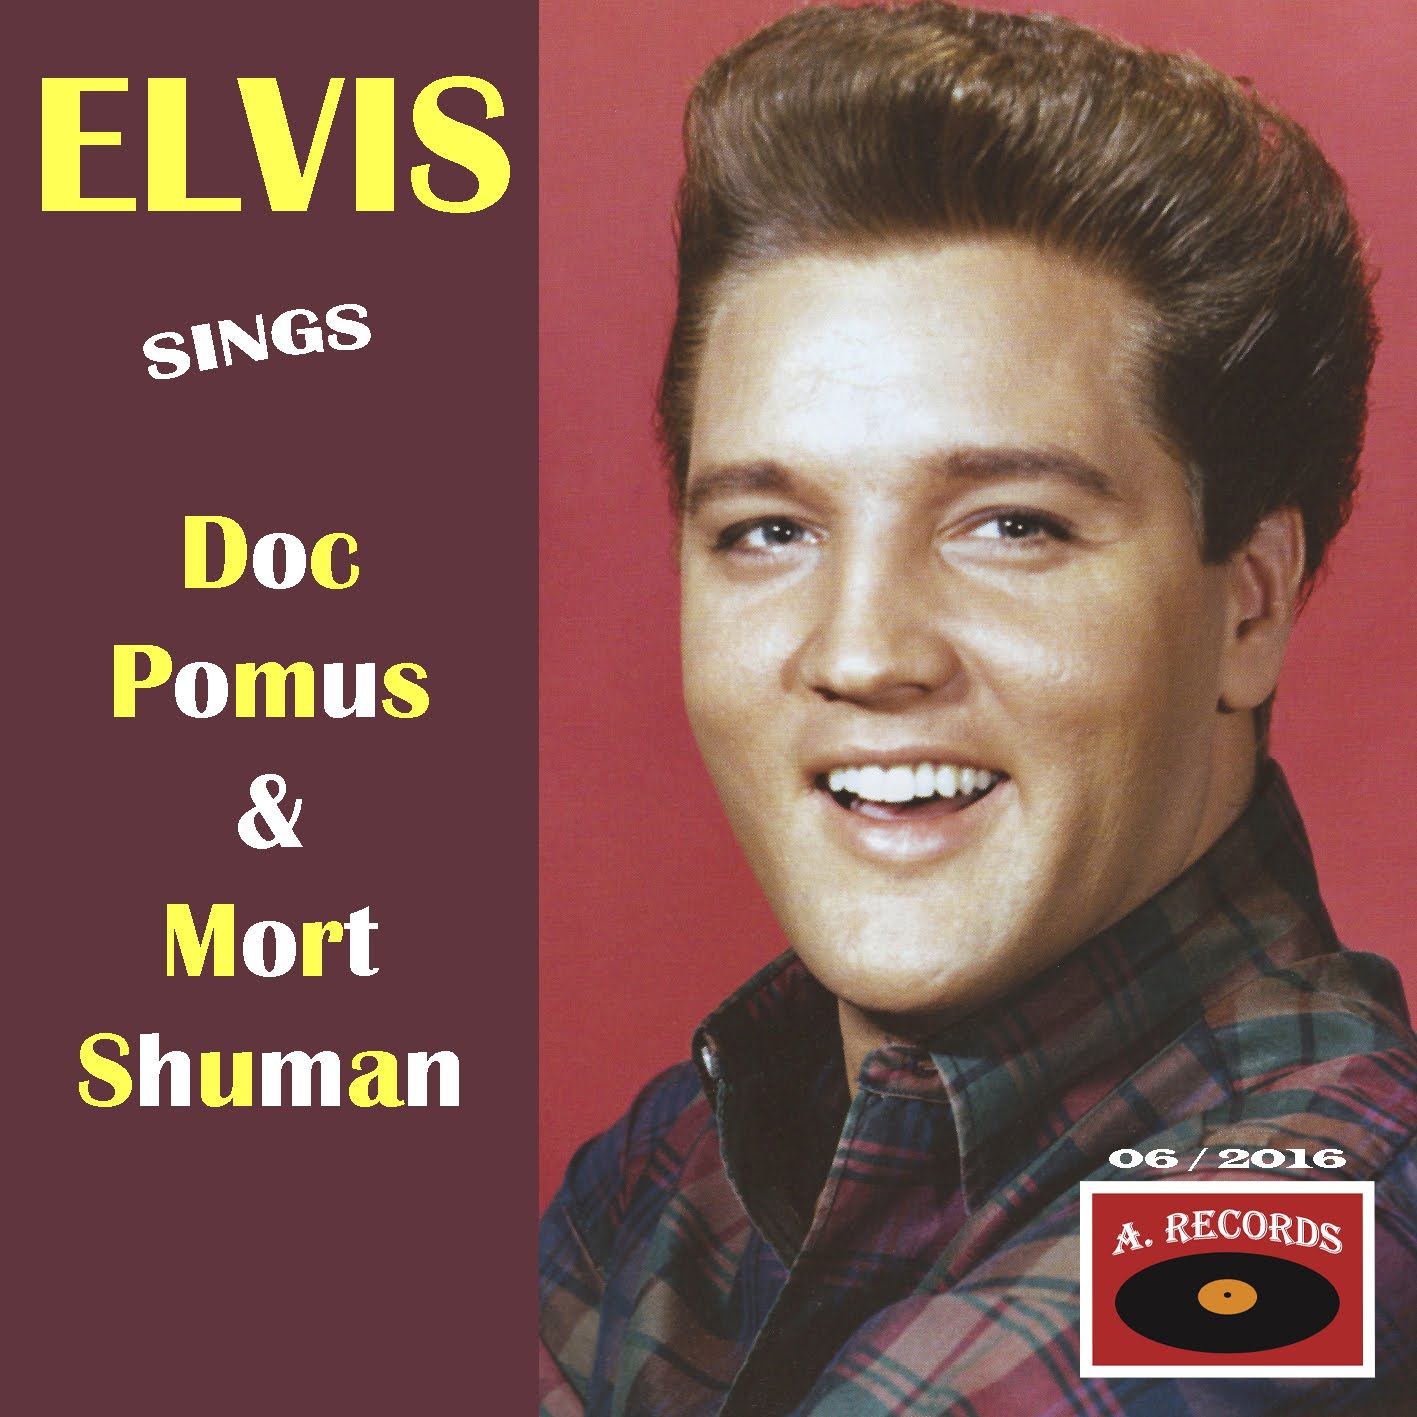 Elvis Sings Doc Pomus & Mort Shuman (June 2016)